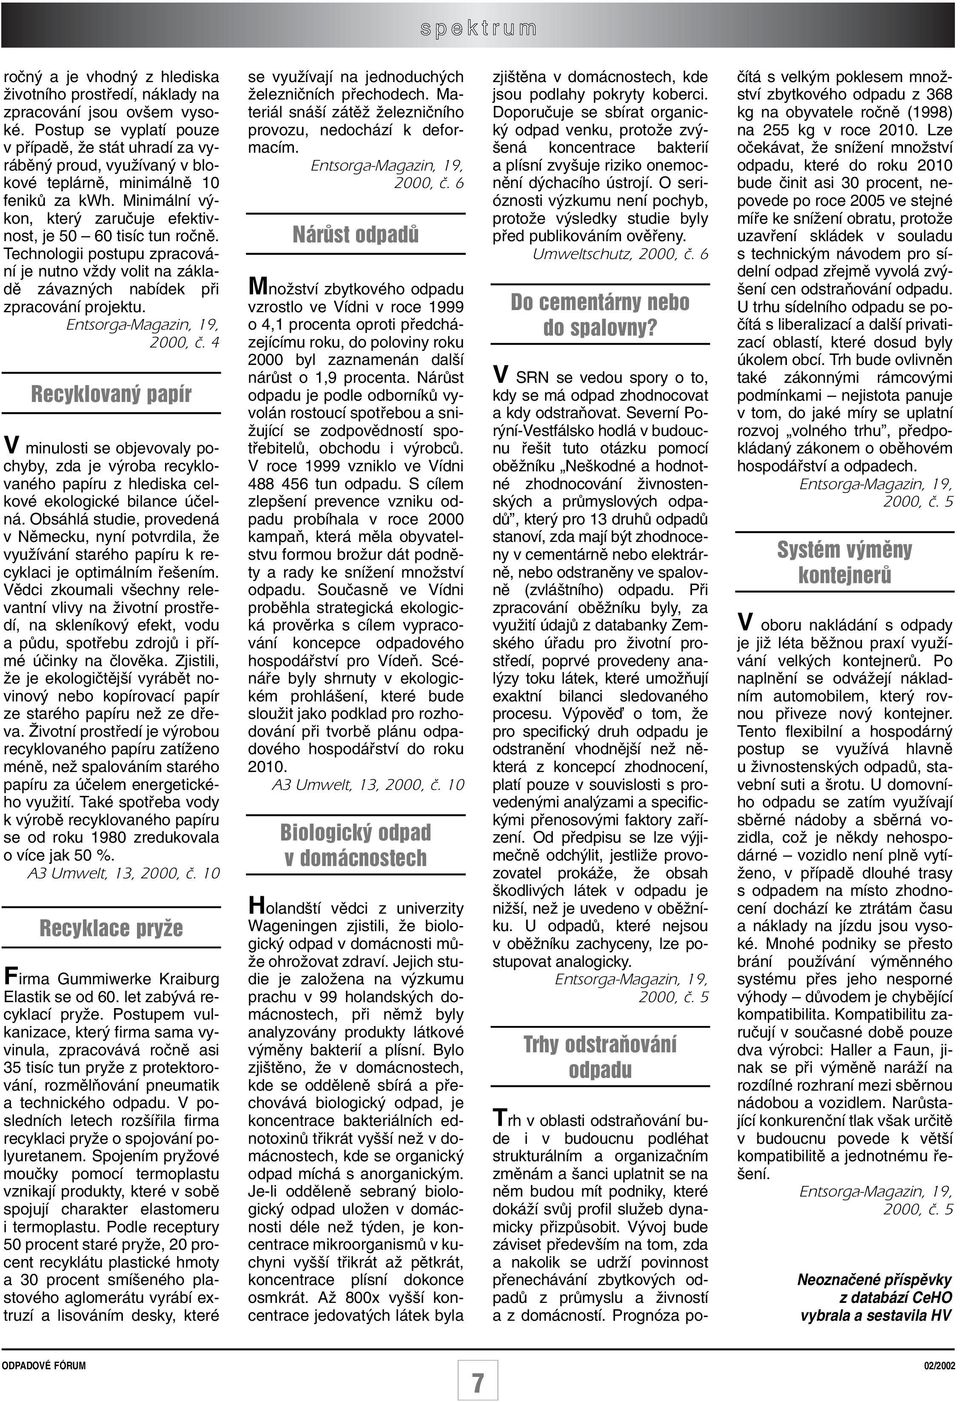 Technologii postupu zpracování je nutno vïdy volit na základû závazn ch nabídek pfii zpracování projektu. Entsorga-Magazin, 19, 2000, ã.